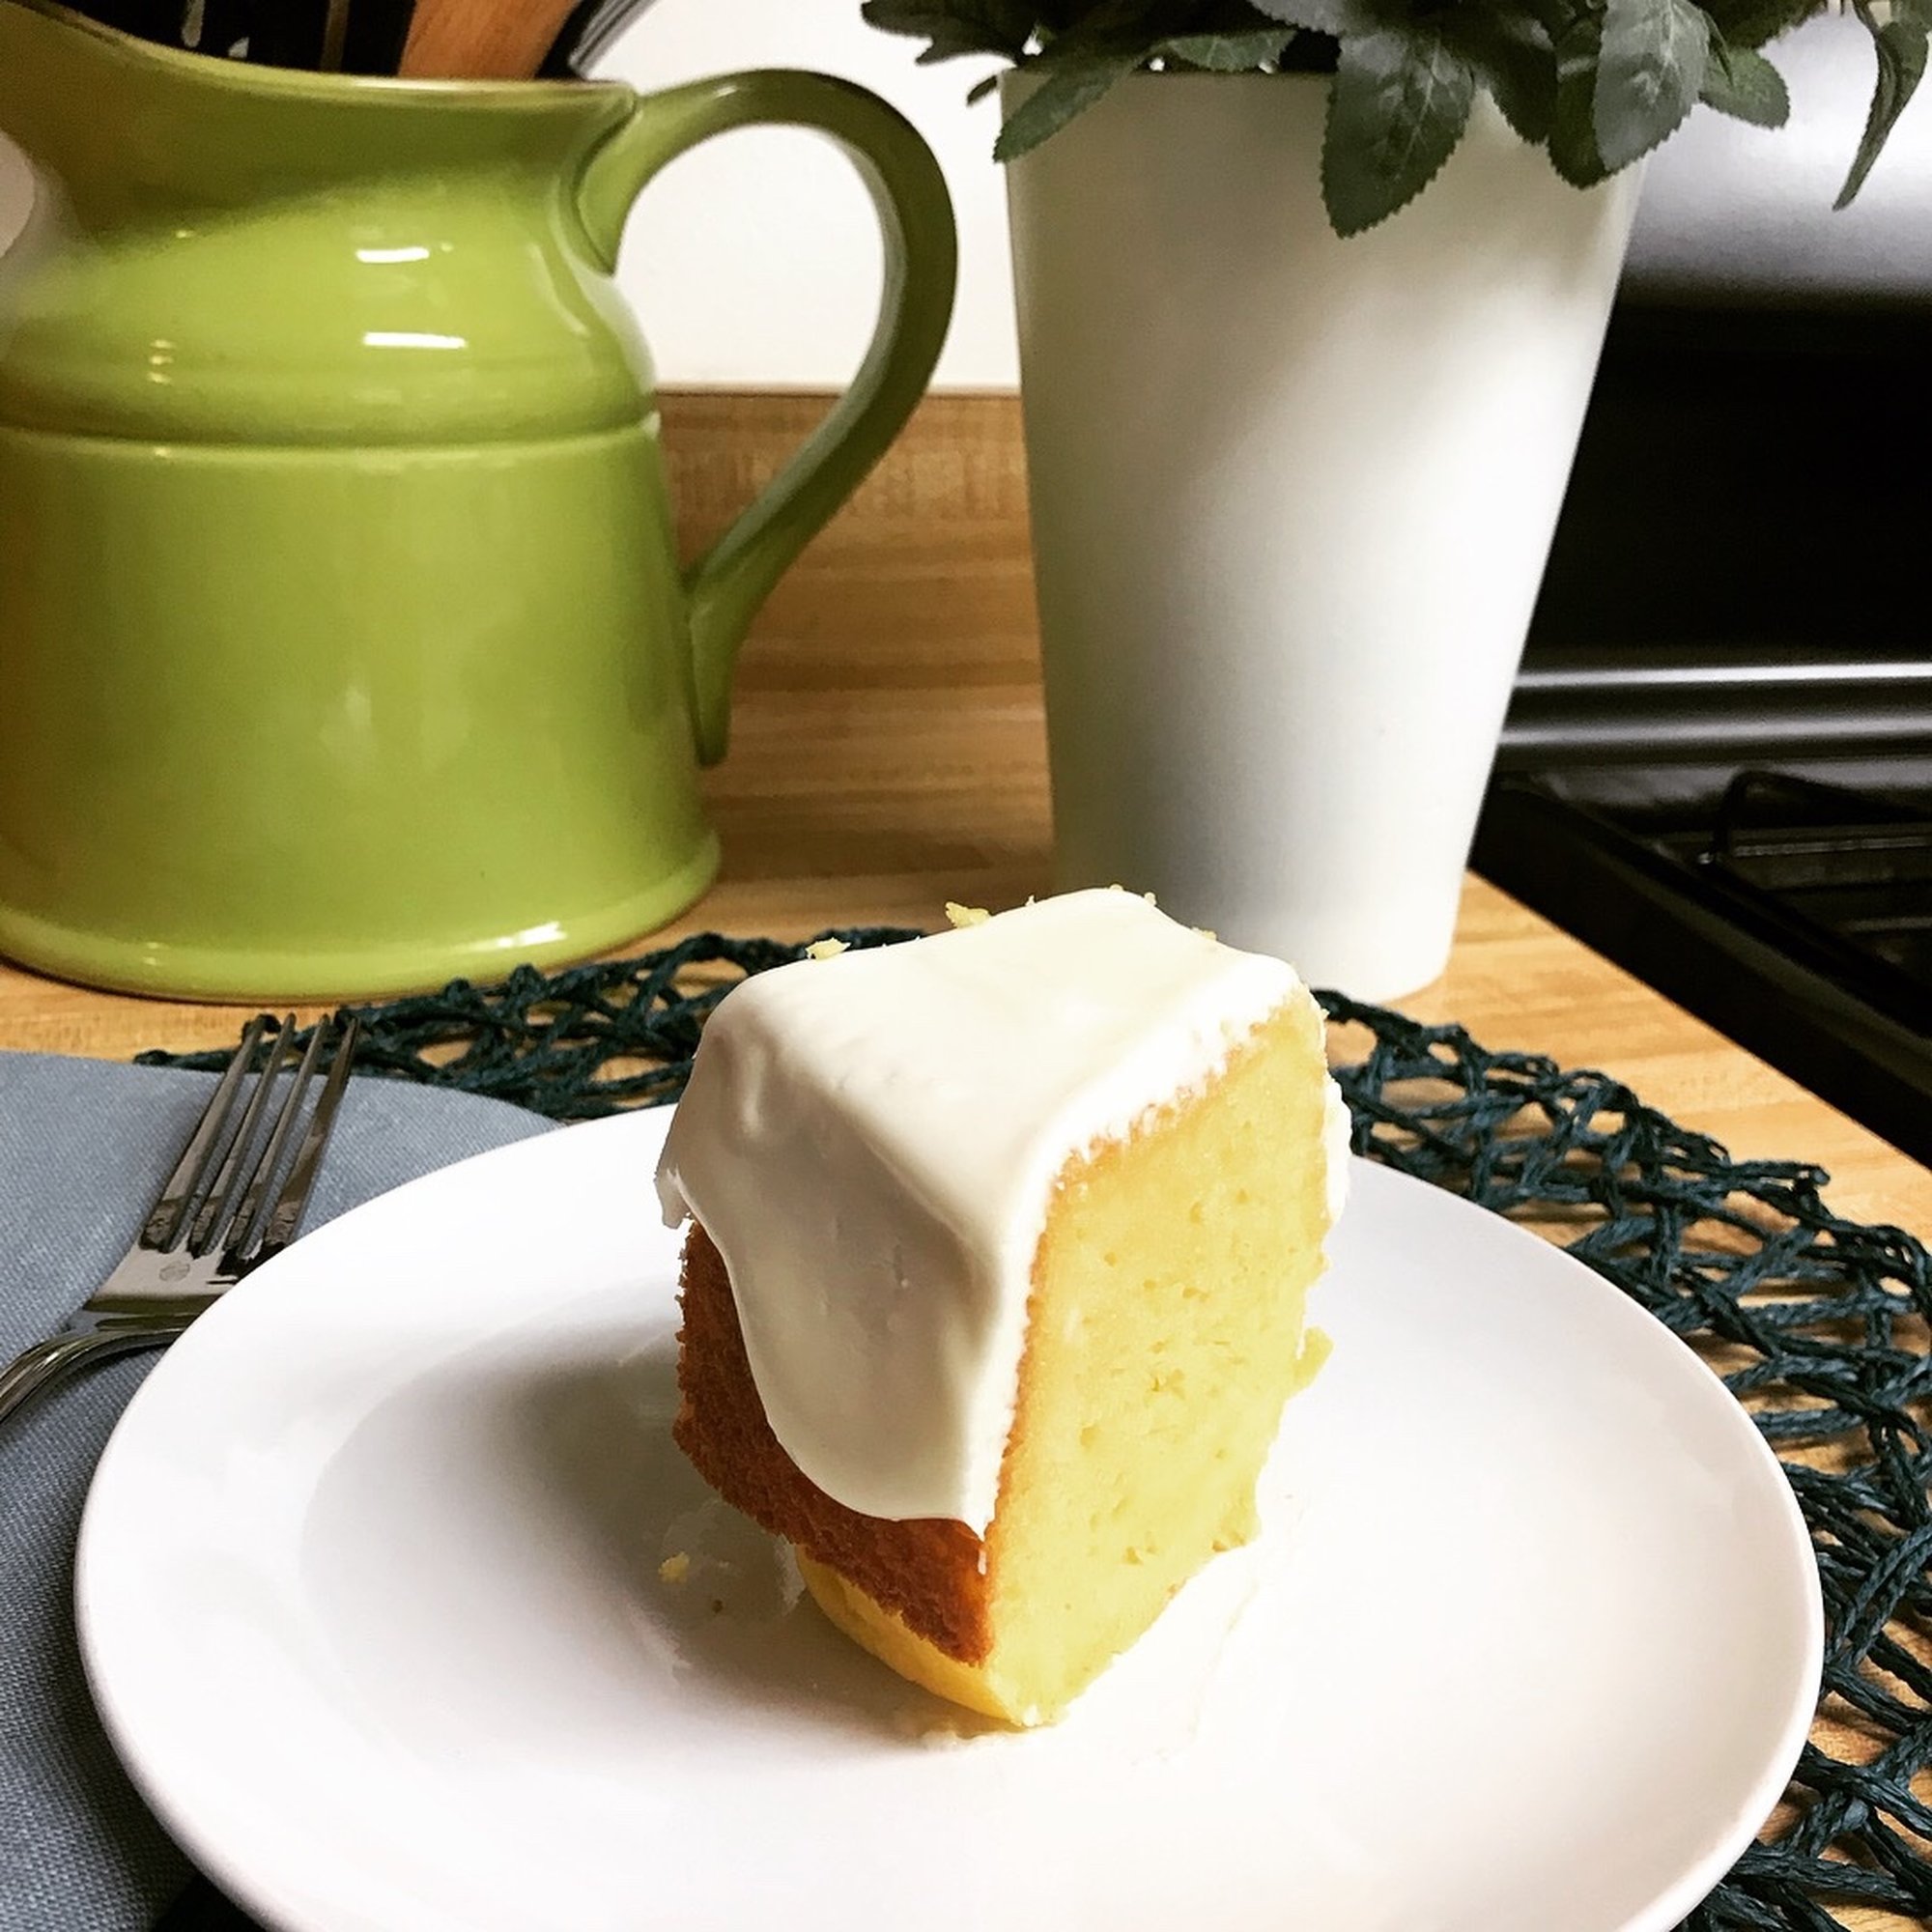 Easy Lemon Bundt Cake From Cake Mix With Mascarpone Icing